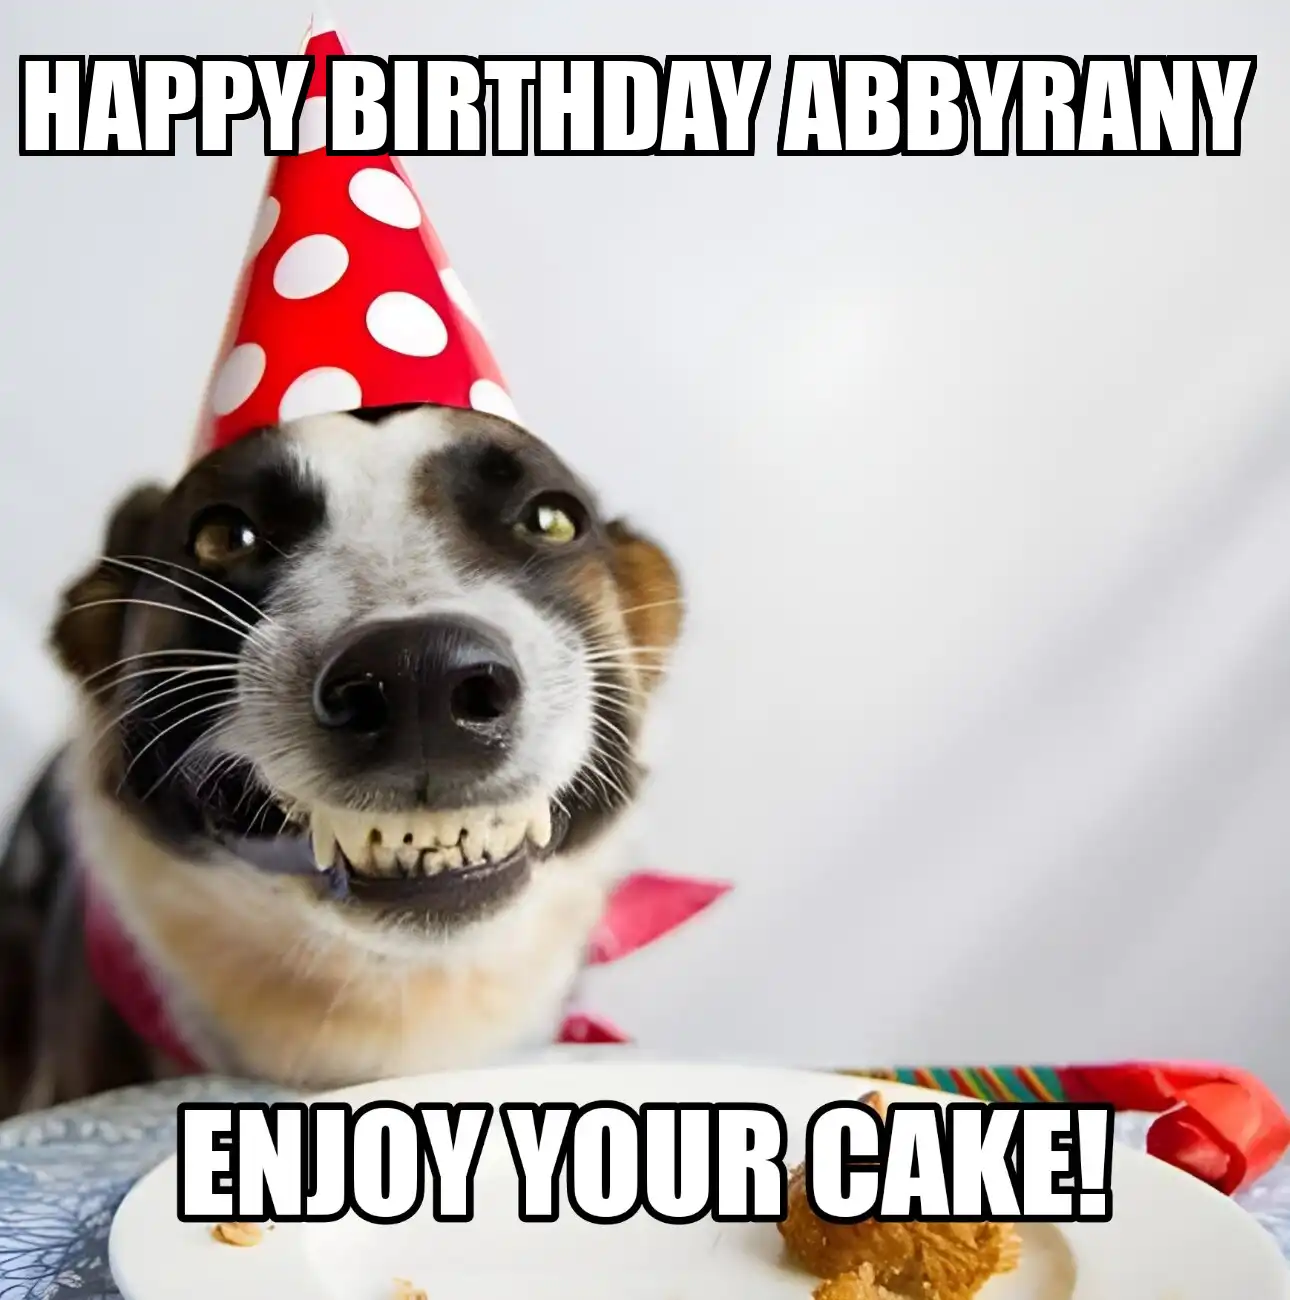 Happy Birthday Abbyrany Enjoy Your Cake Dog Meme